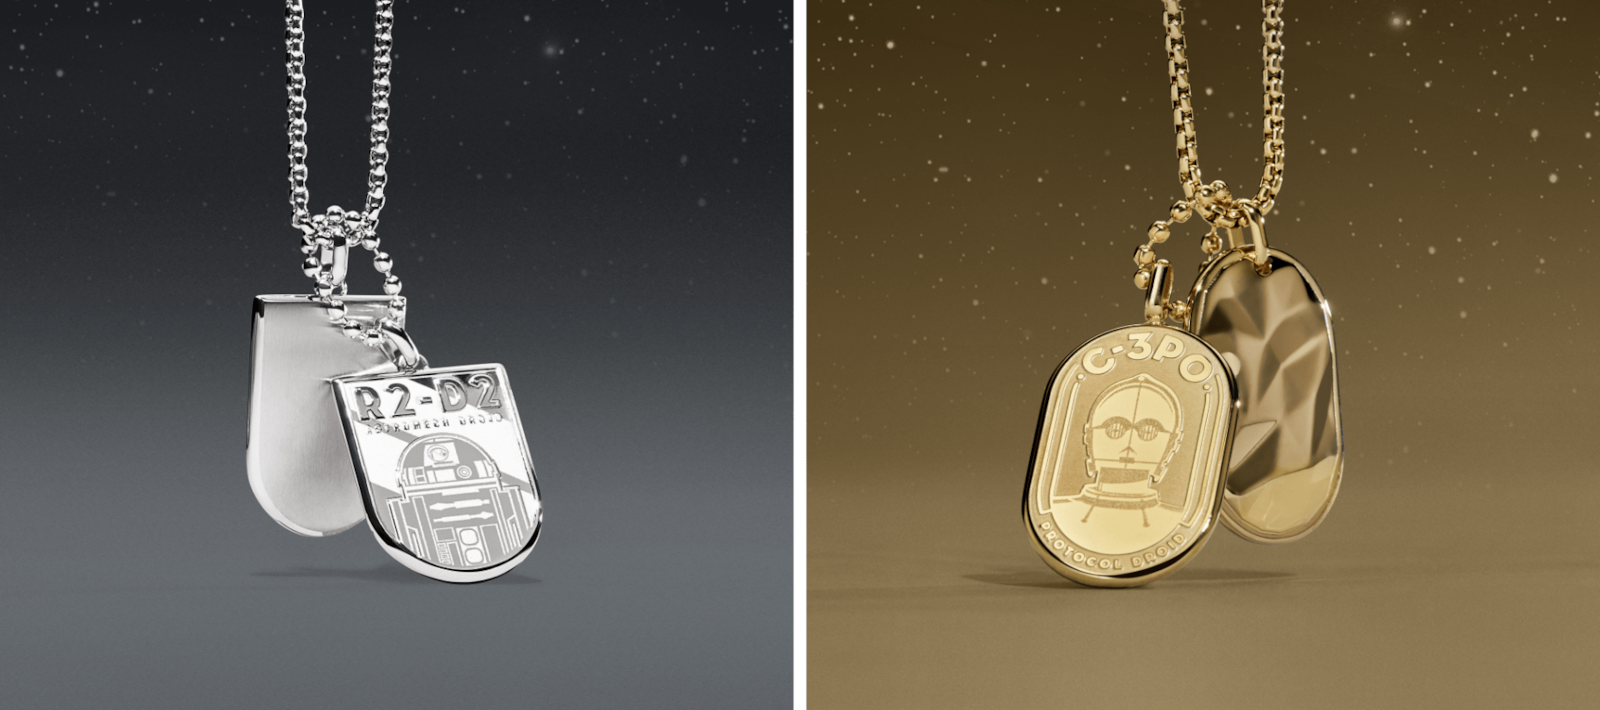 Un collier doré avec une plaque d’identification ornée d’une gravure de C-3PO et un collier argenté avec une plaque d’identification ornée d’une gravure de R2-D2 